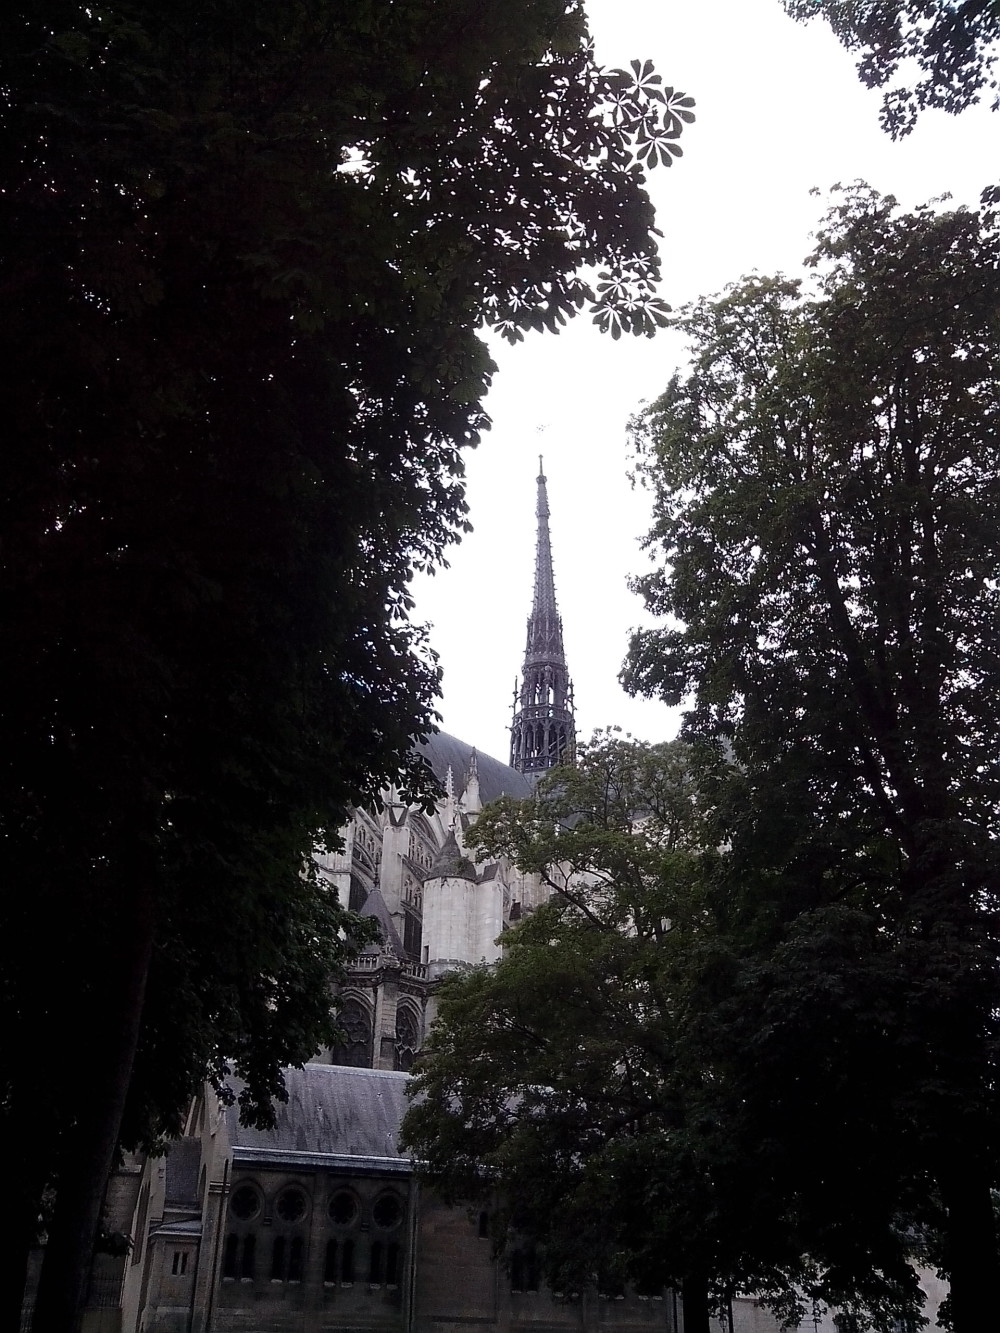 la cathédrale d'amiens vue du parc de l'évéché d'amiens ,photo prise avec smartphone